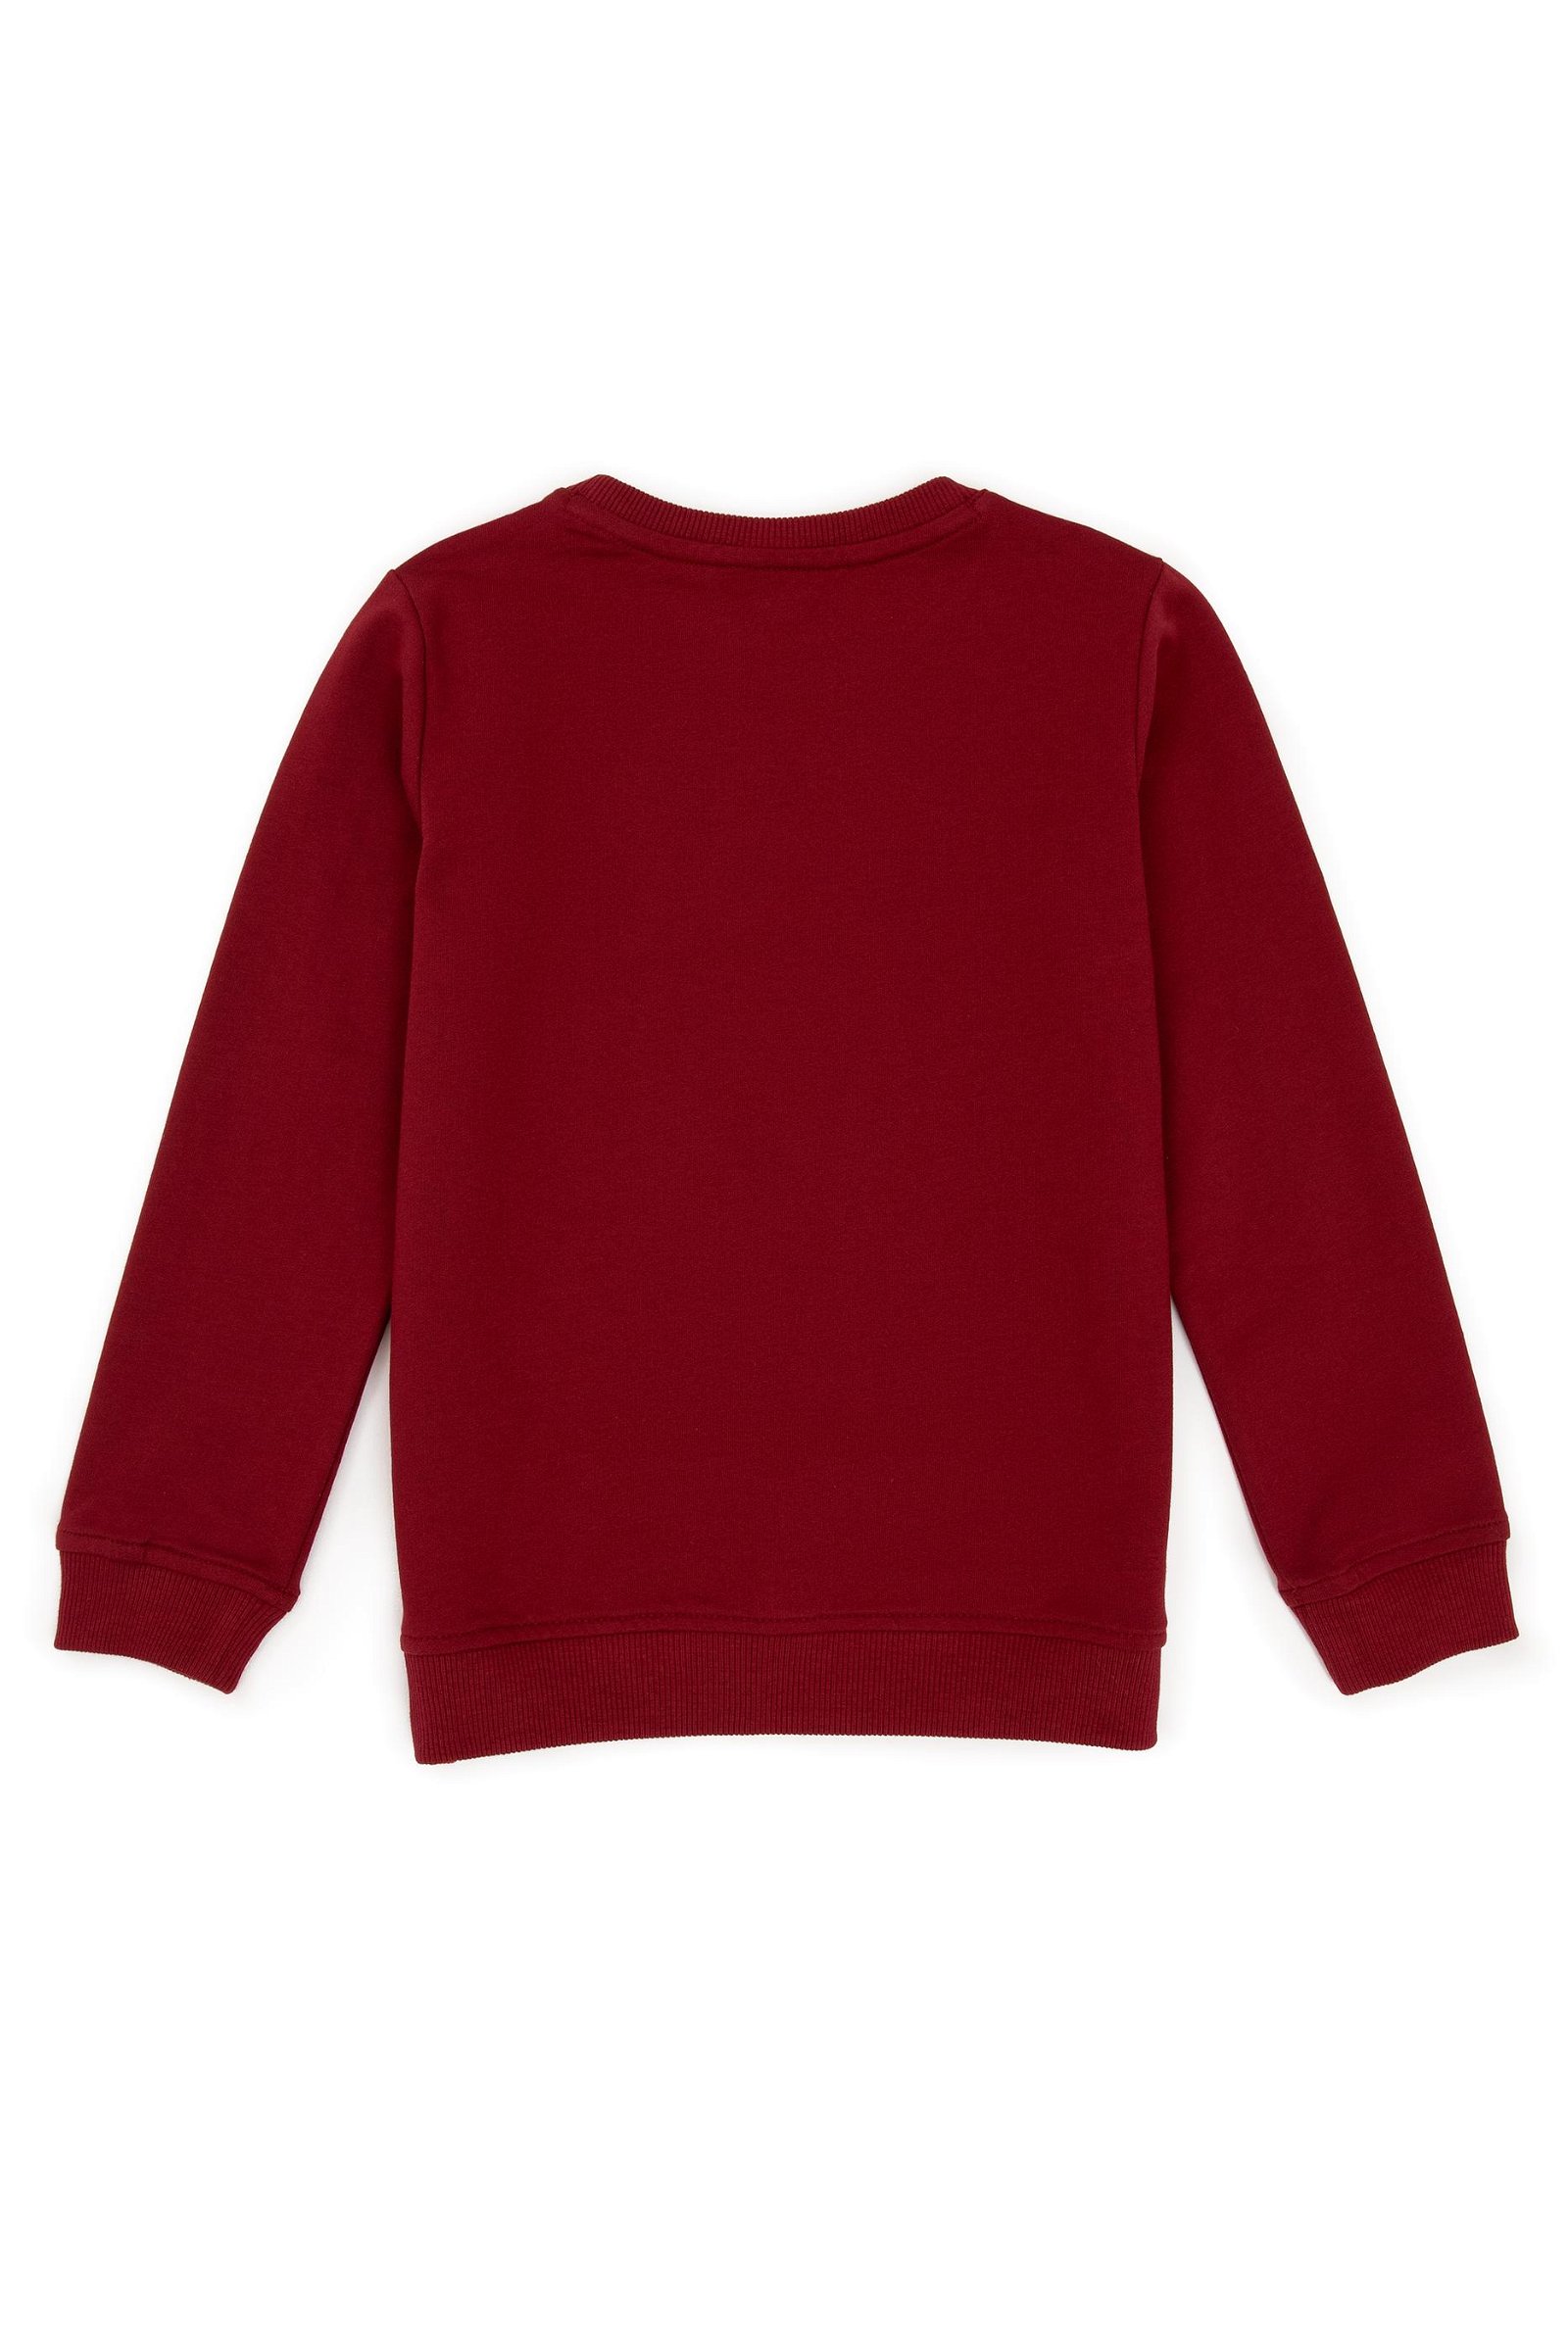 Erkek Çocuk Kırmızı Basic Sweatshirt